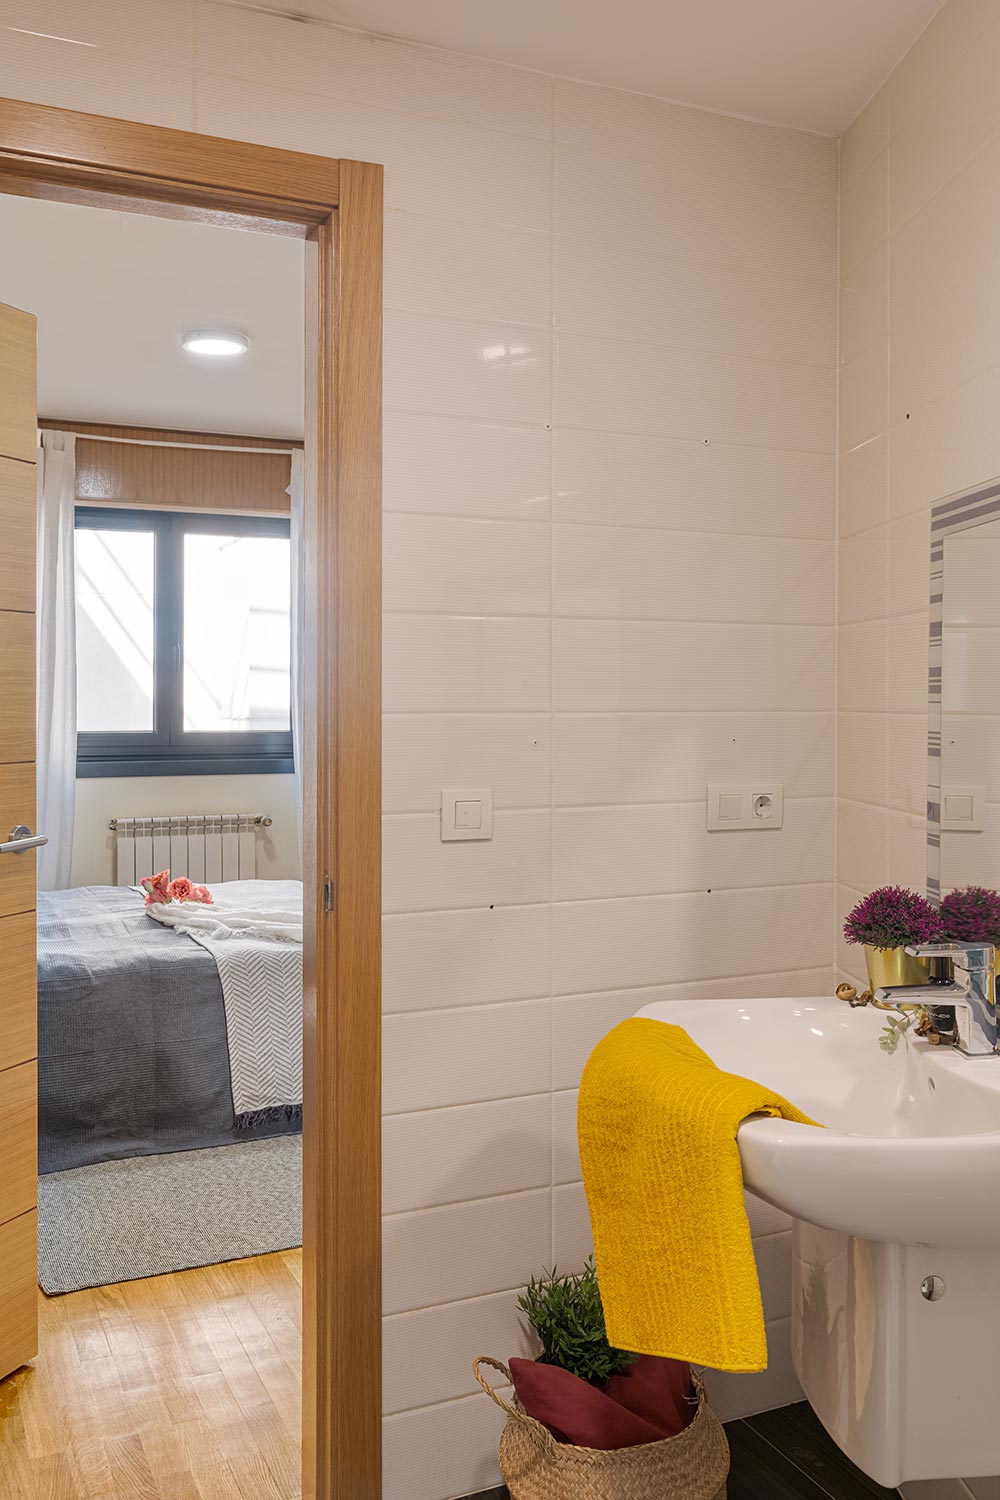 Vista desde el interior de un baño moderno y bien iluminado hacia una habitación acogedora. El baño cuenta con azulejos texturizados en tonos crema, y un lavabo con una toalla amarilla vibrante. En la habitación se ve una cama con ropa de cama gris y una ventana que proporciona luz natural, creando un ambiente hogareño y acogedor.